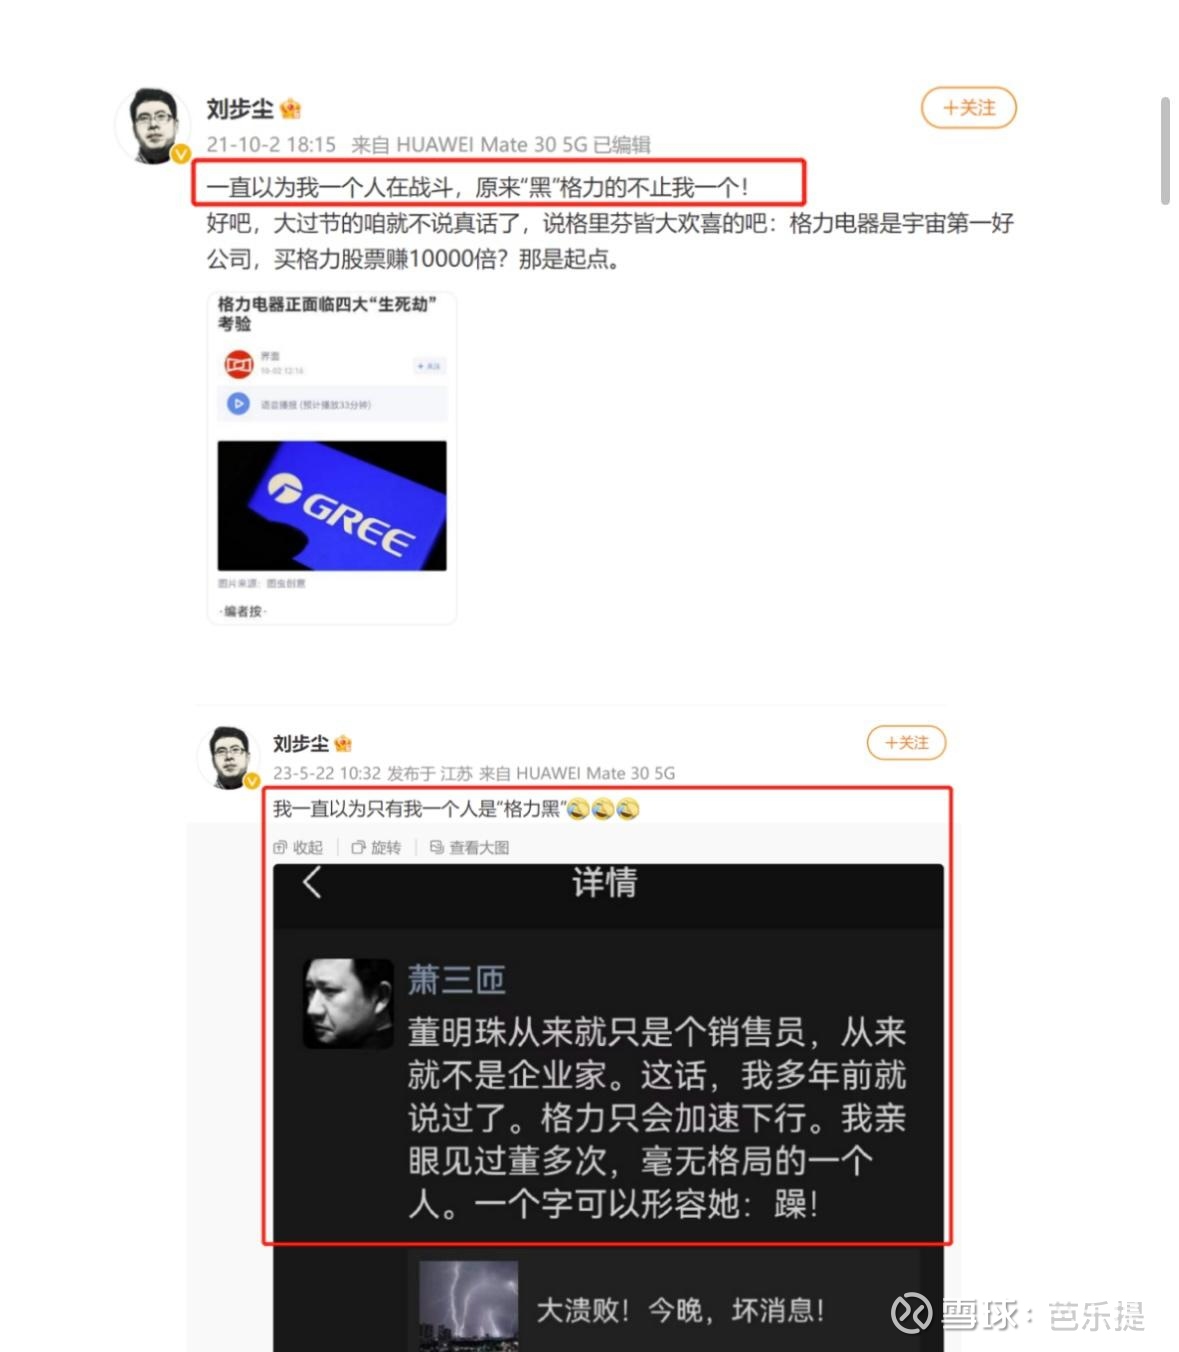 “家电行业分析师”刘步尘上央视